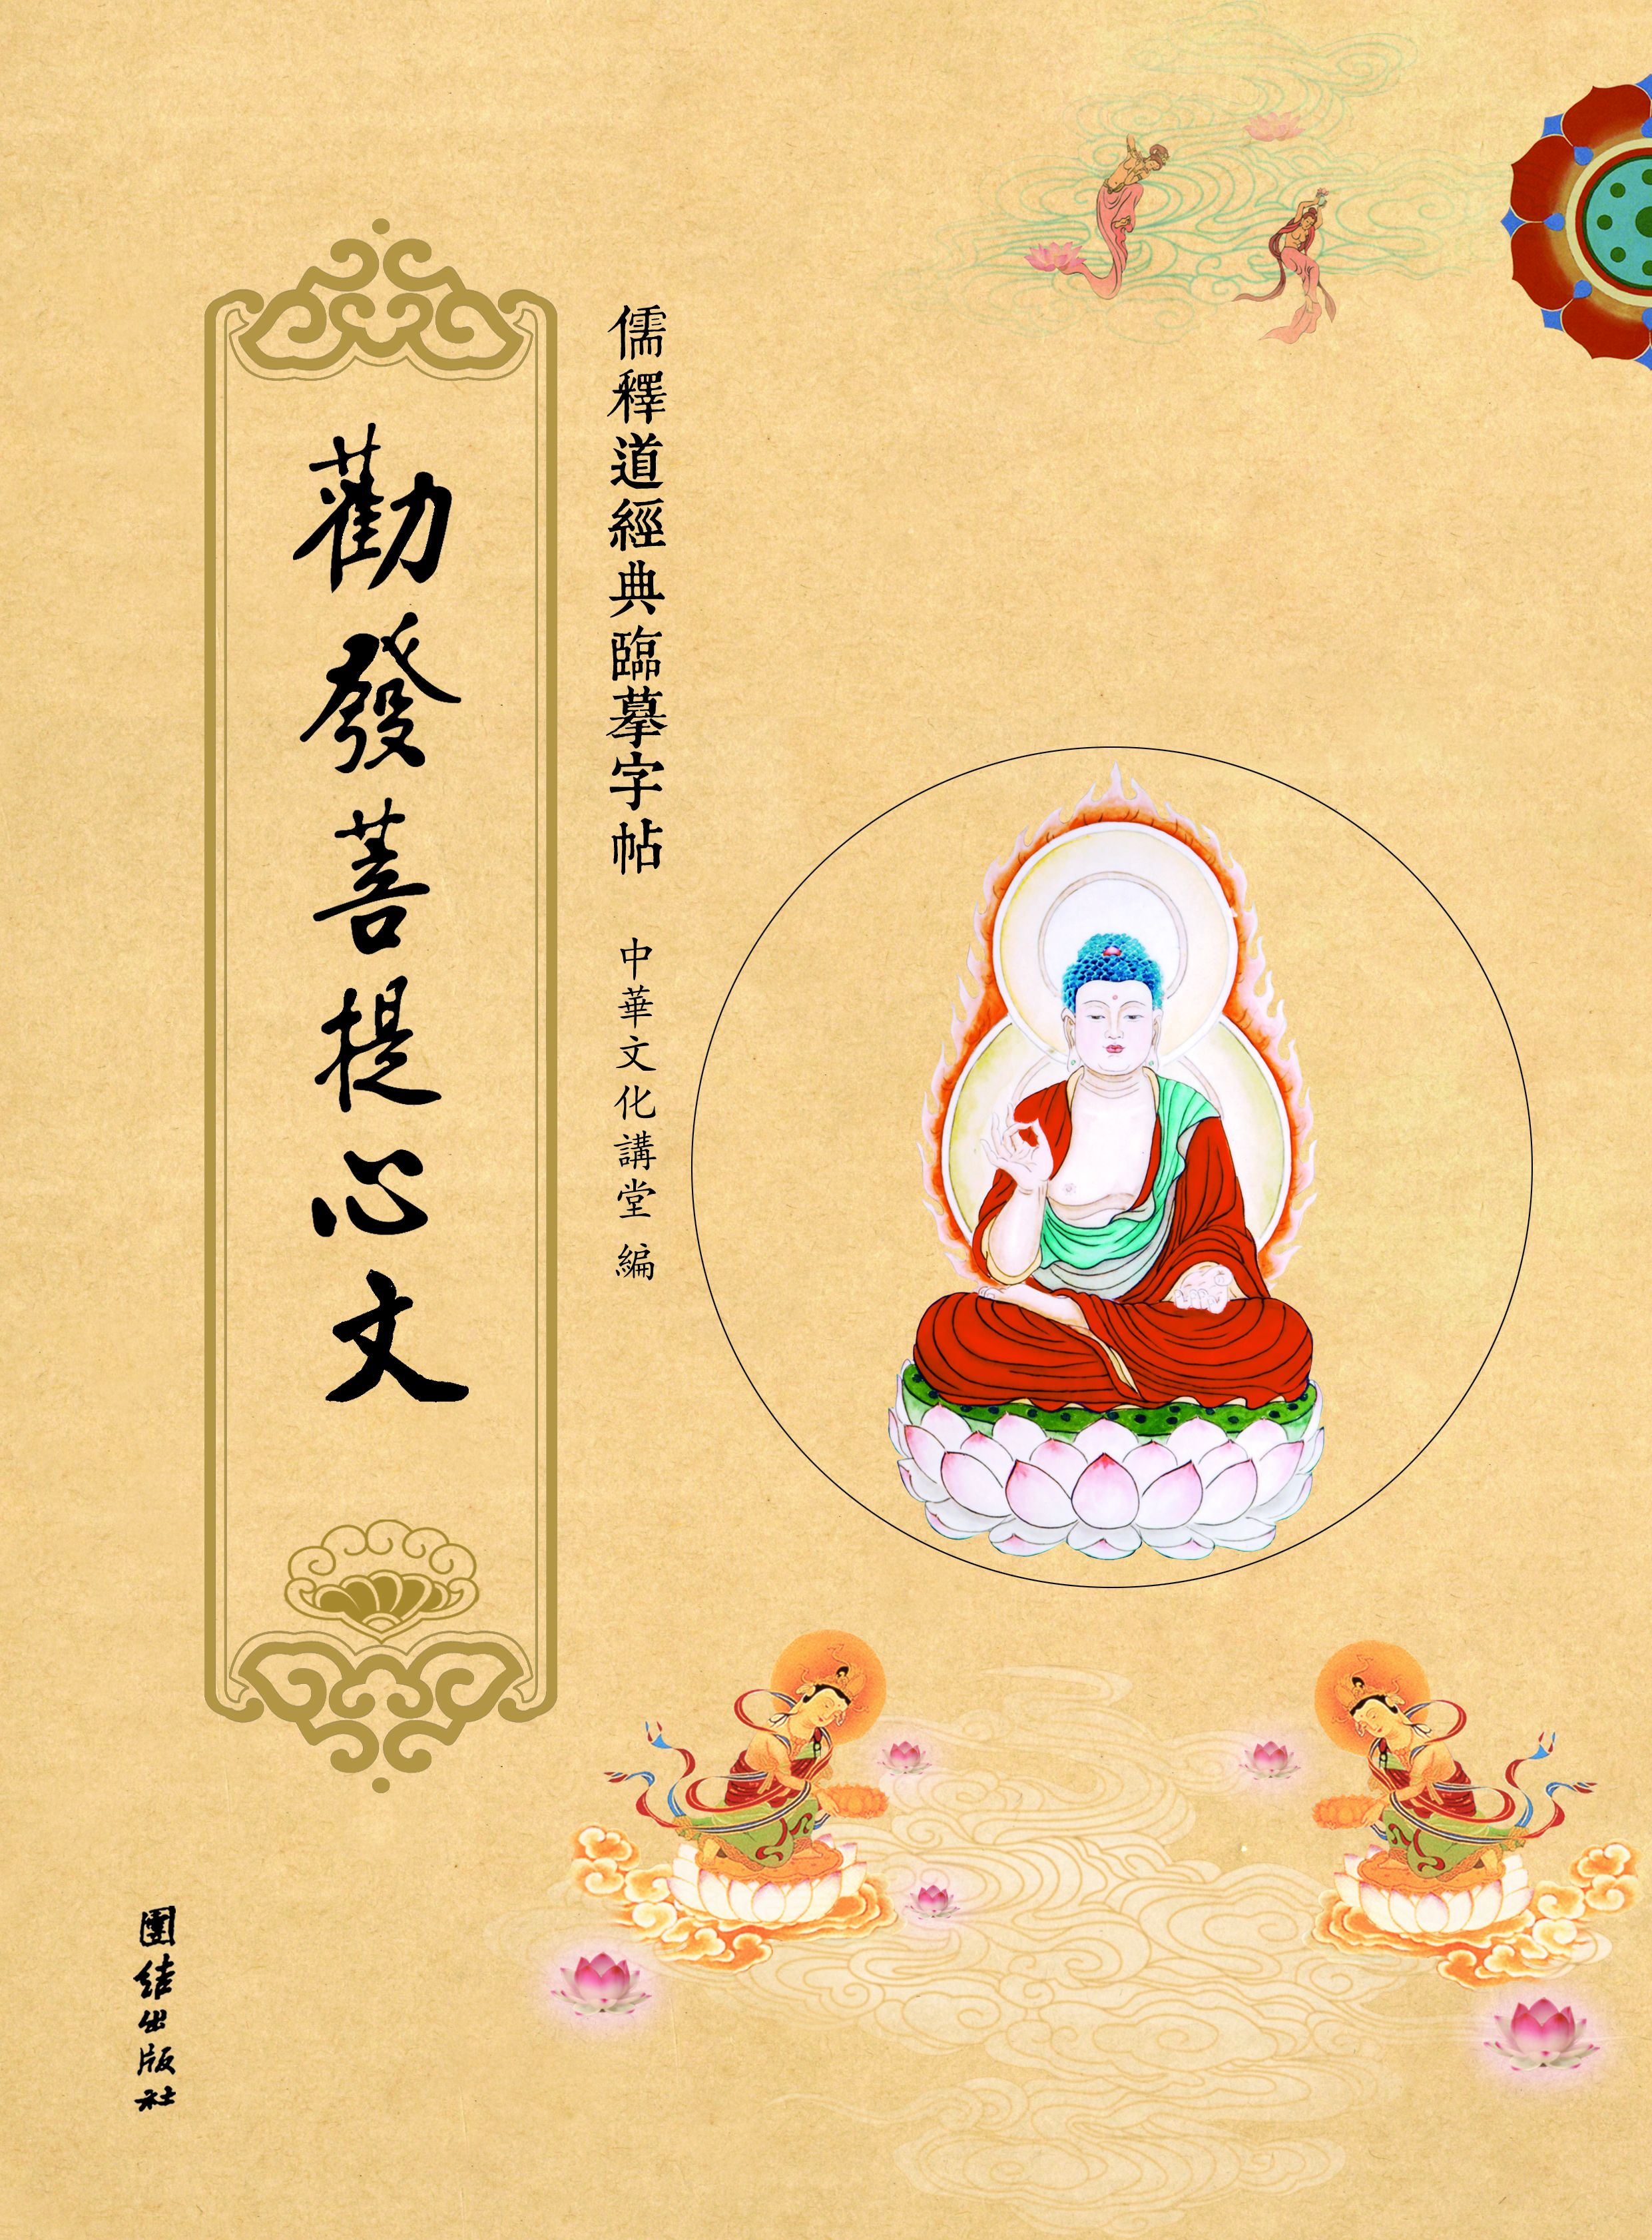 中国传统文化的主流是儒释道三家